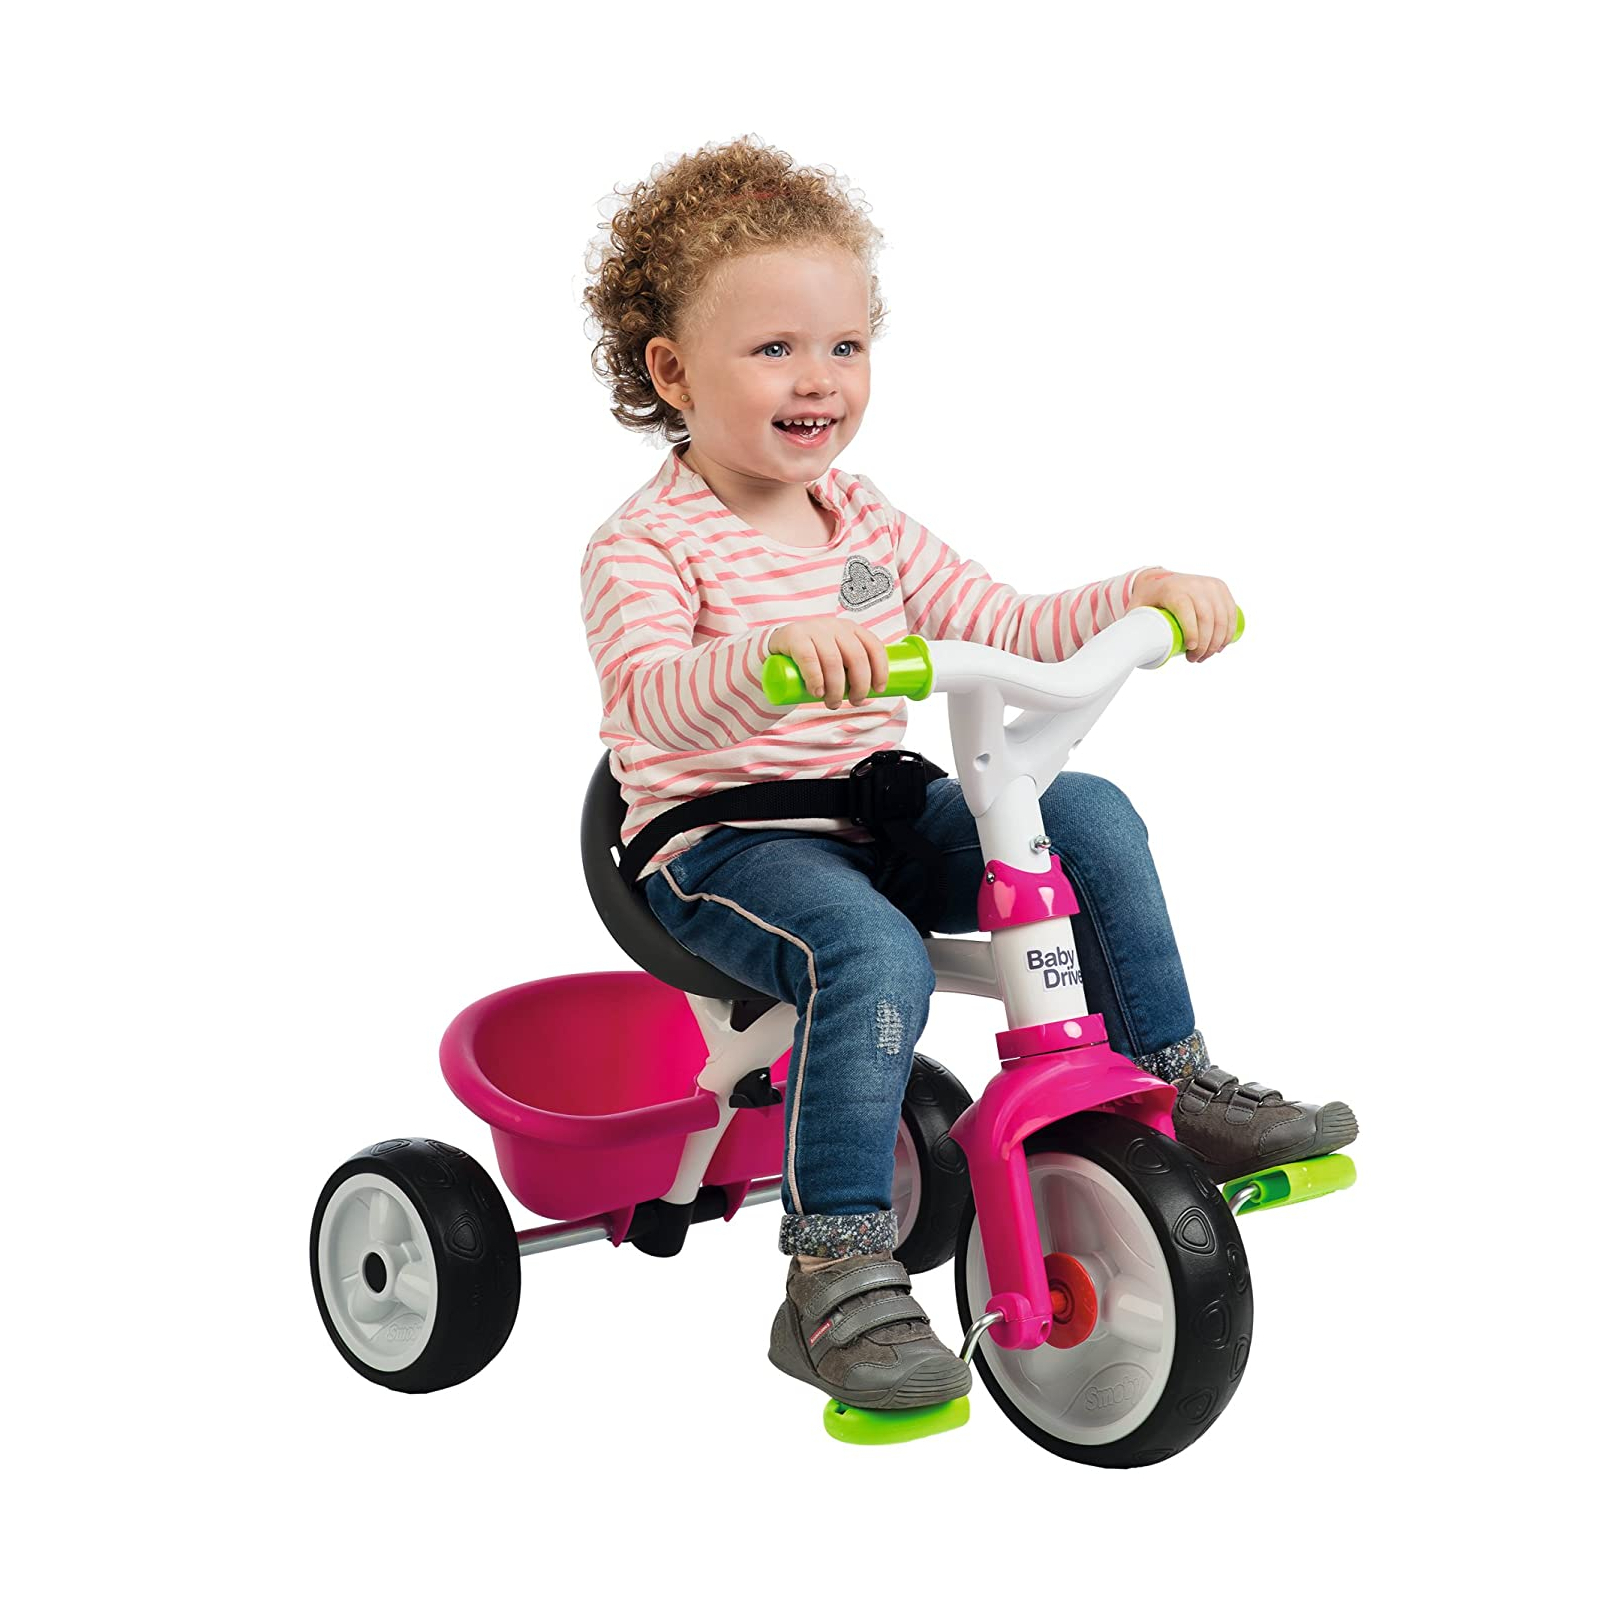 Детский велосипед Smoby Беби Драйвер металлический с козырьком и багажником (741200) изображение 8